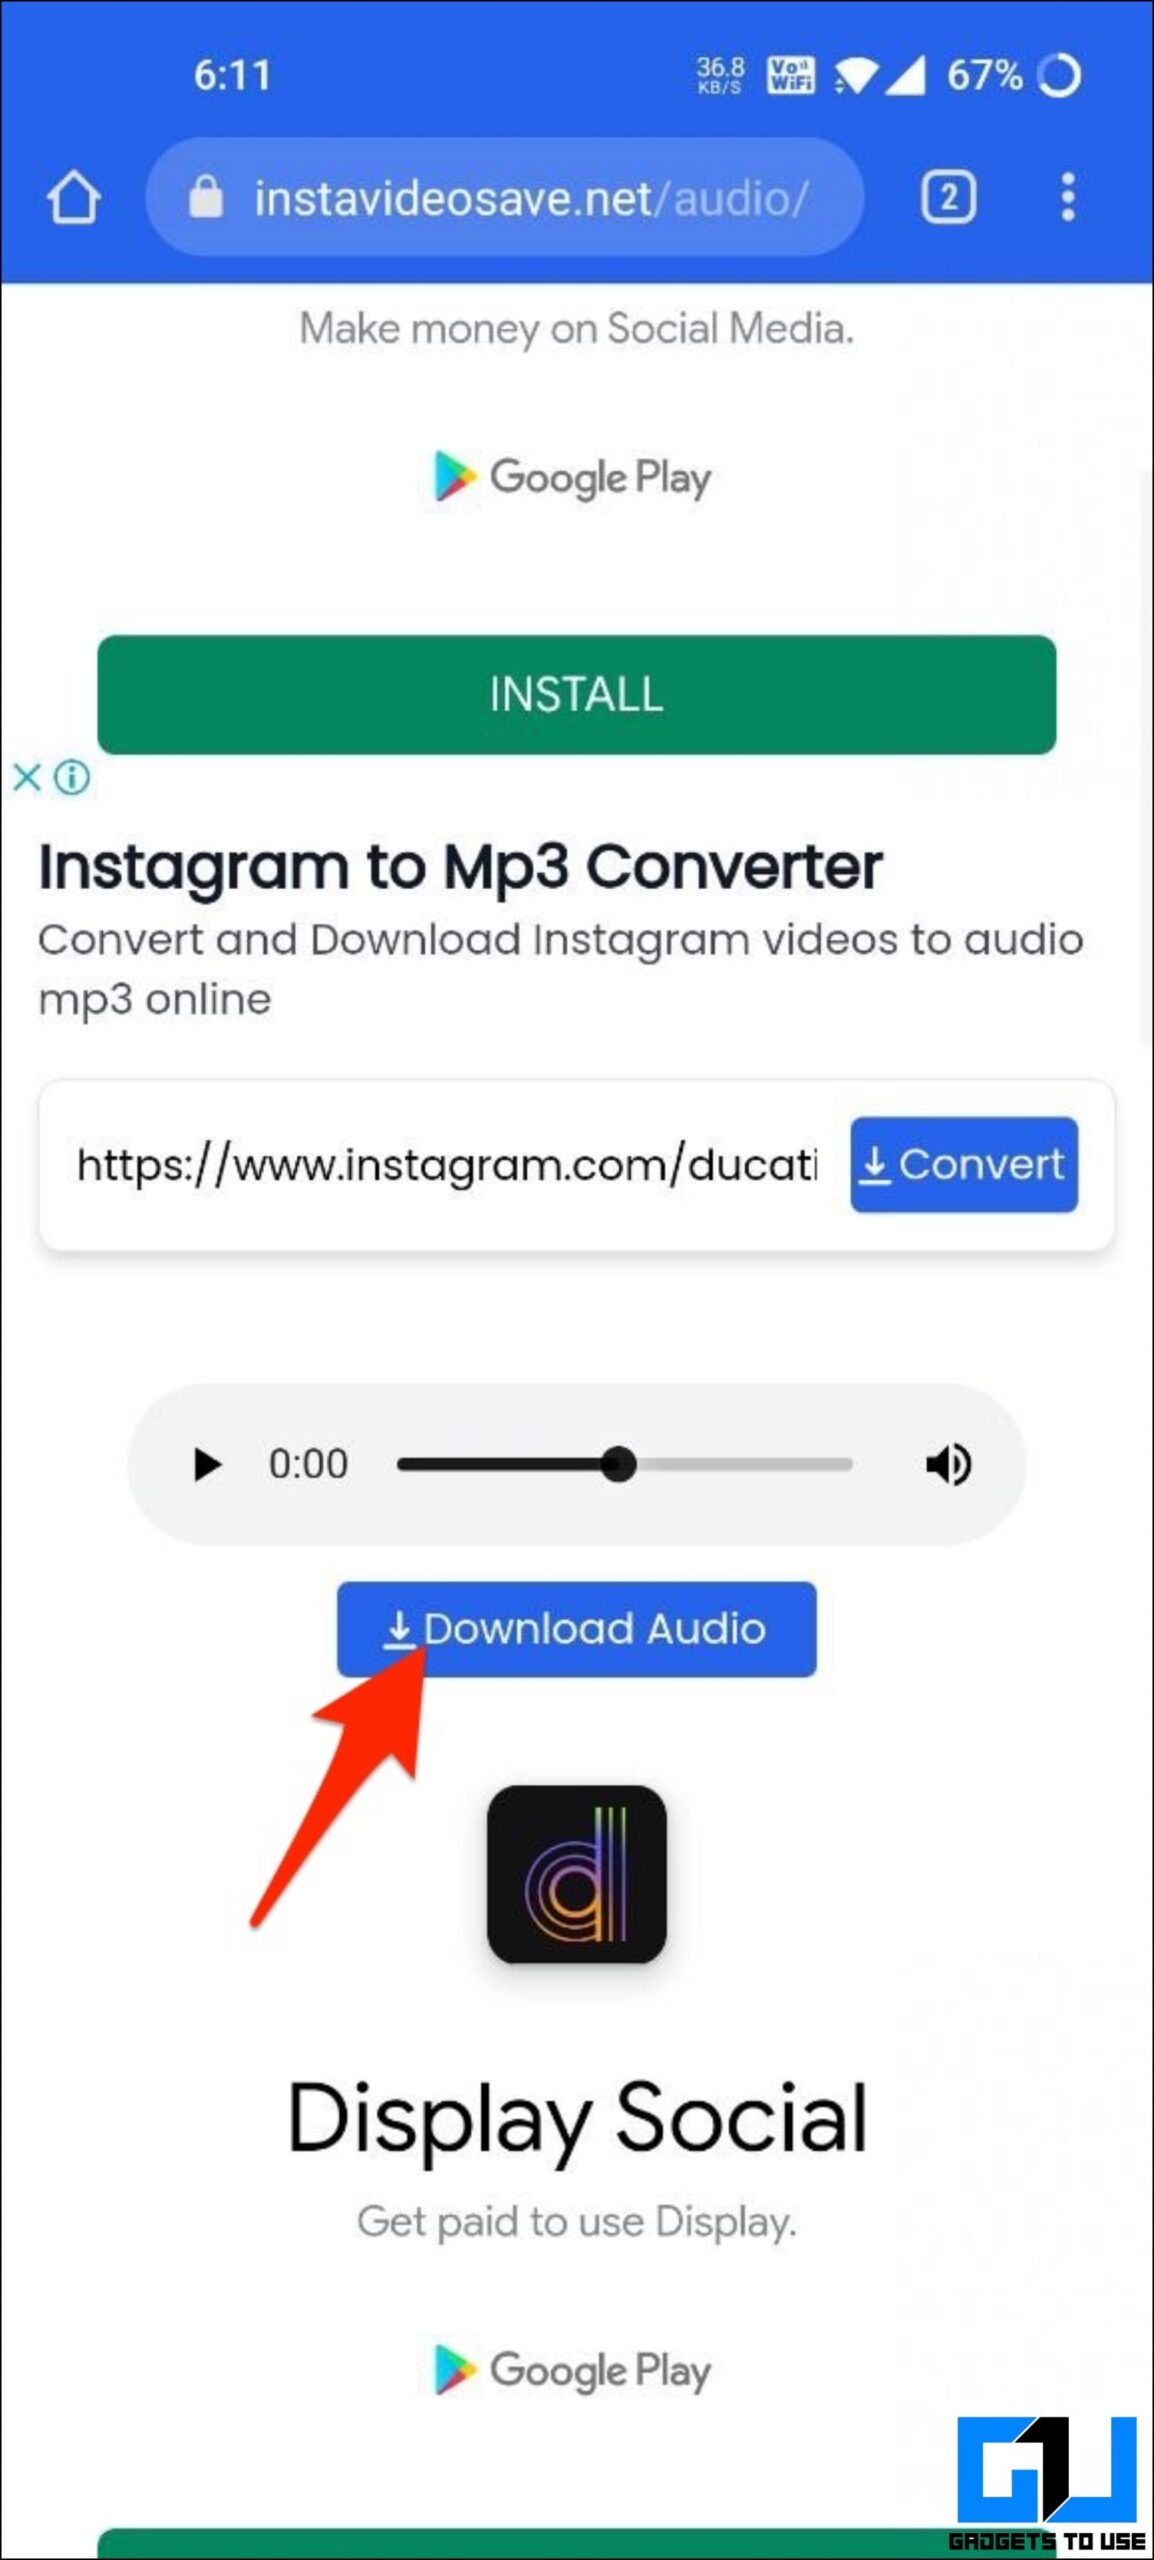 Download Instagram Reel Audio Using Websites